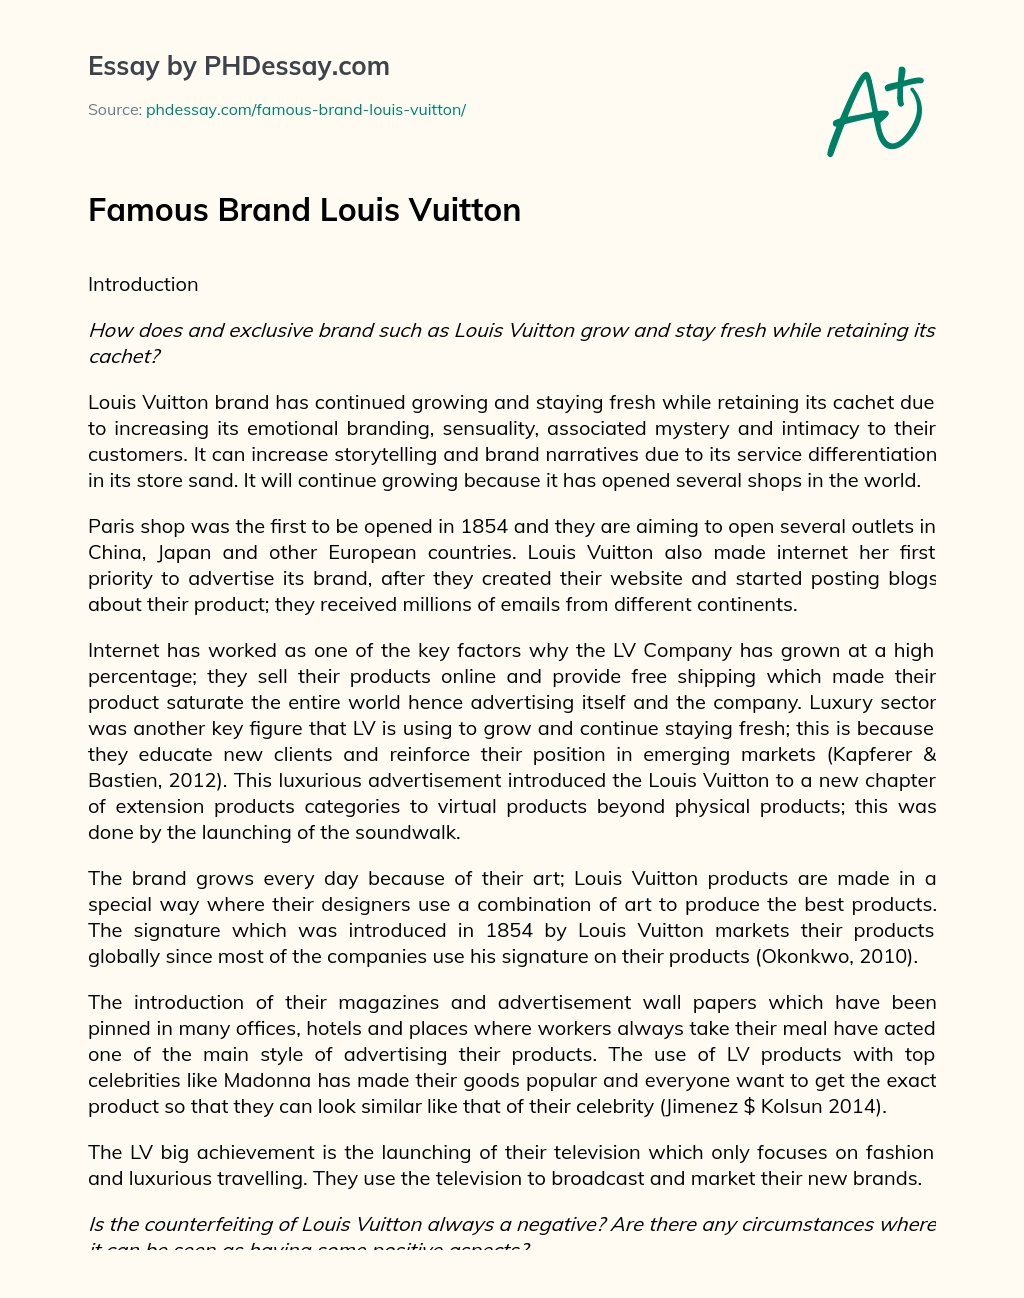 Famous Brand Louis Vuitton essay